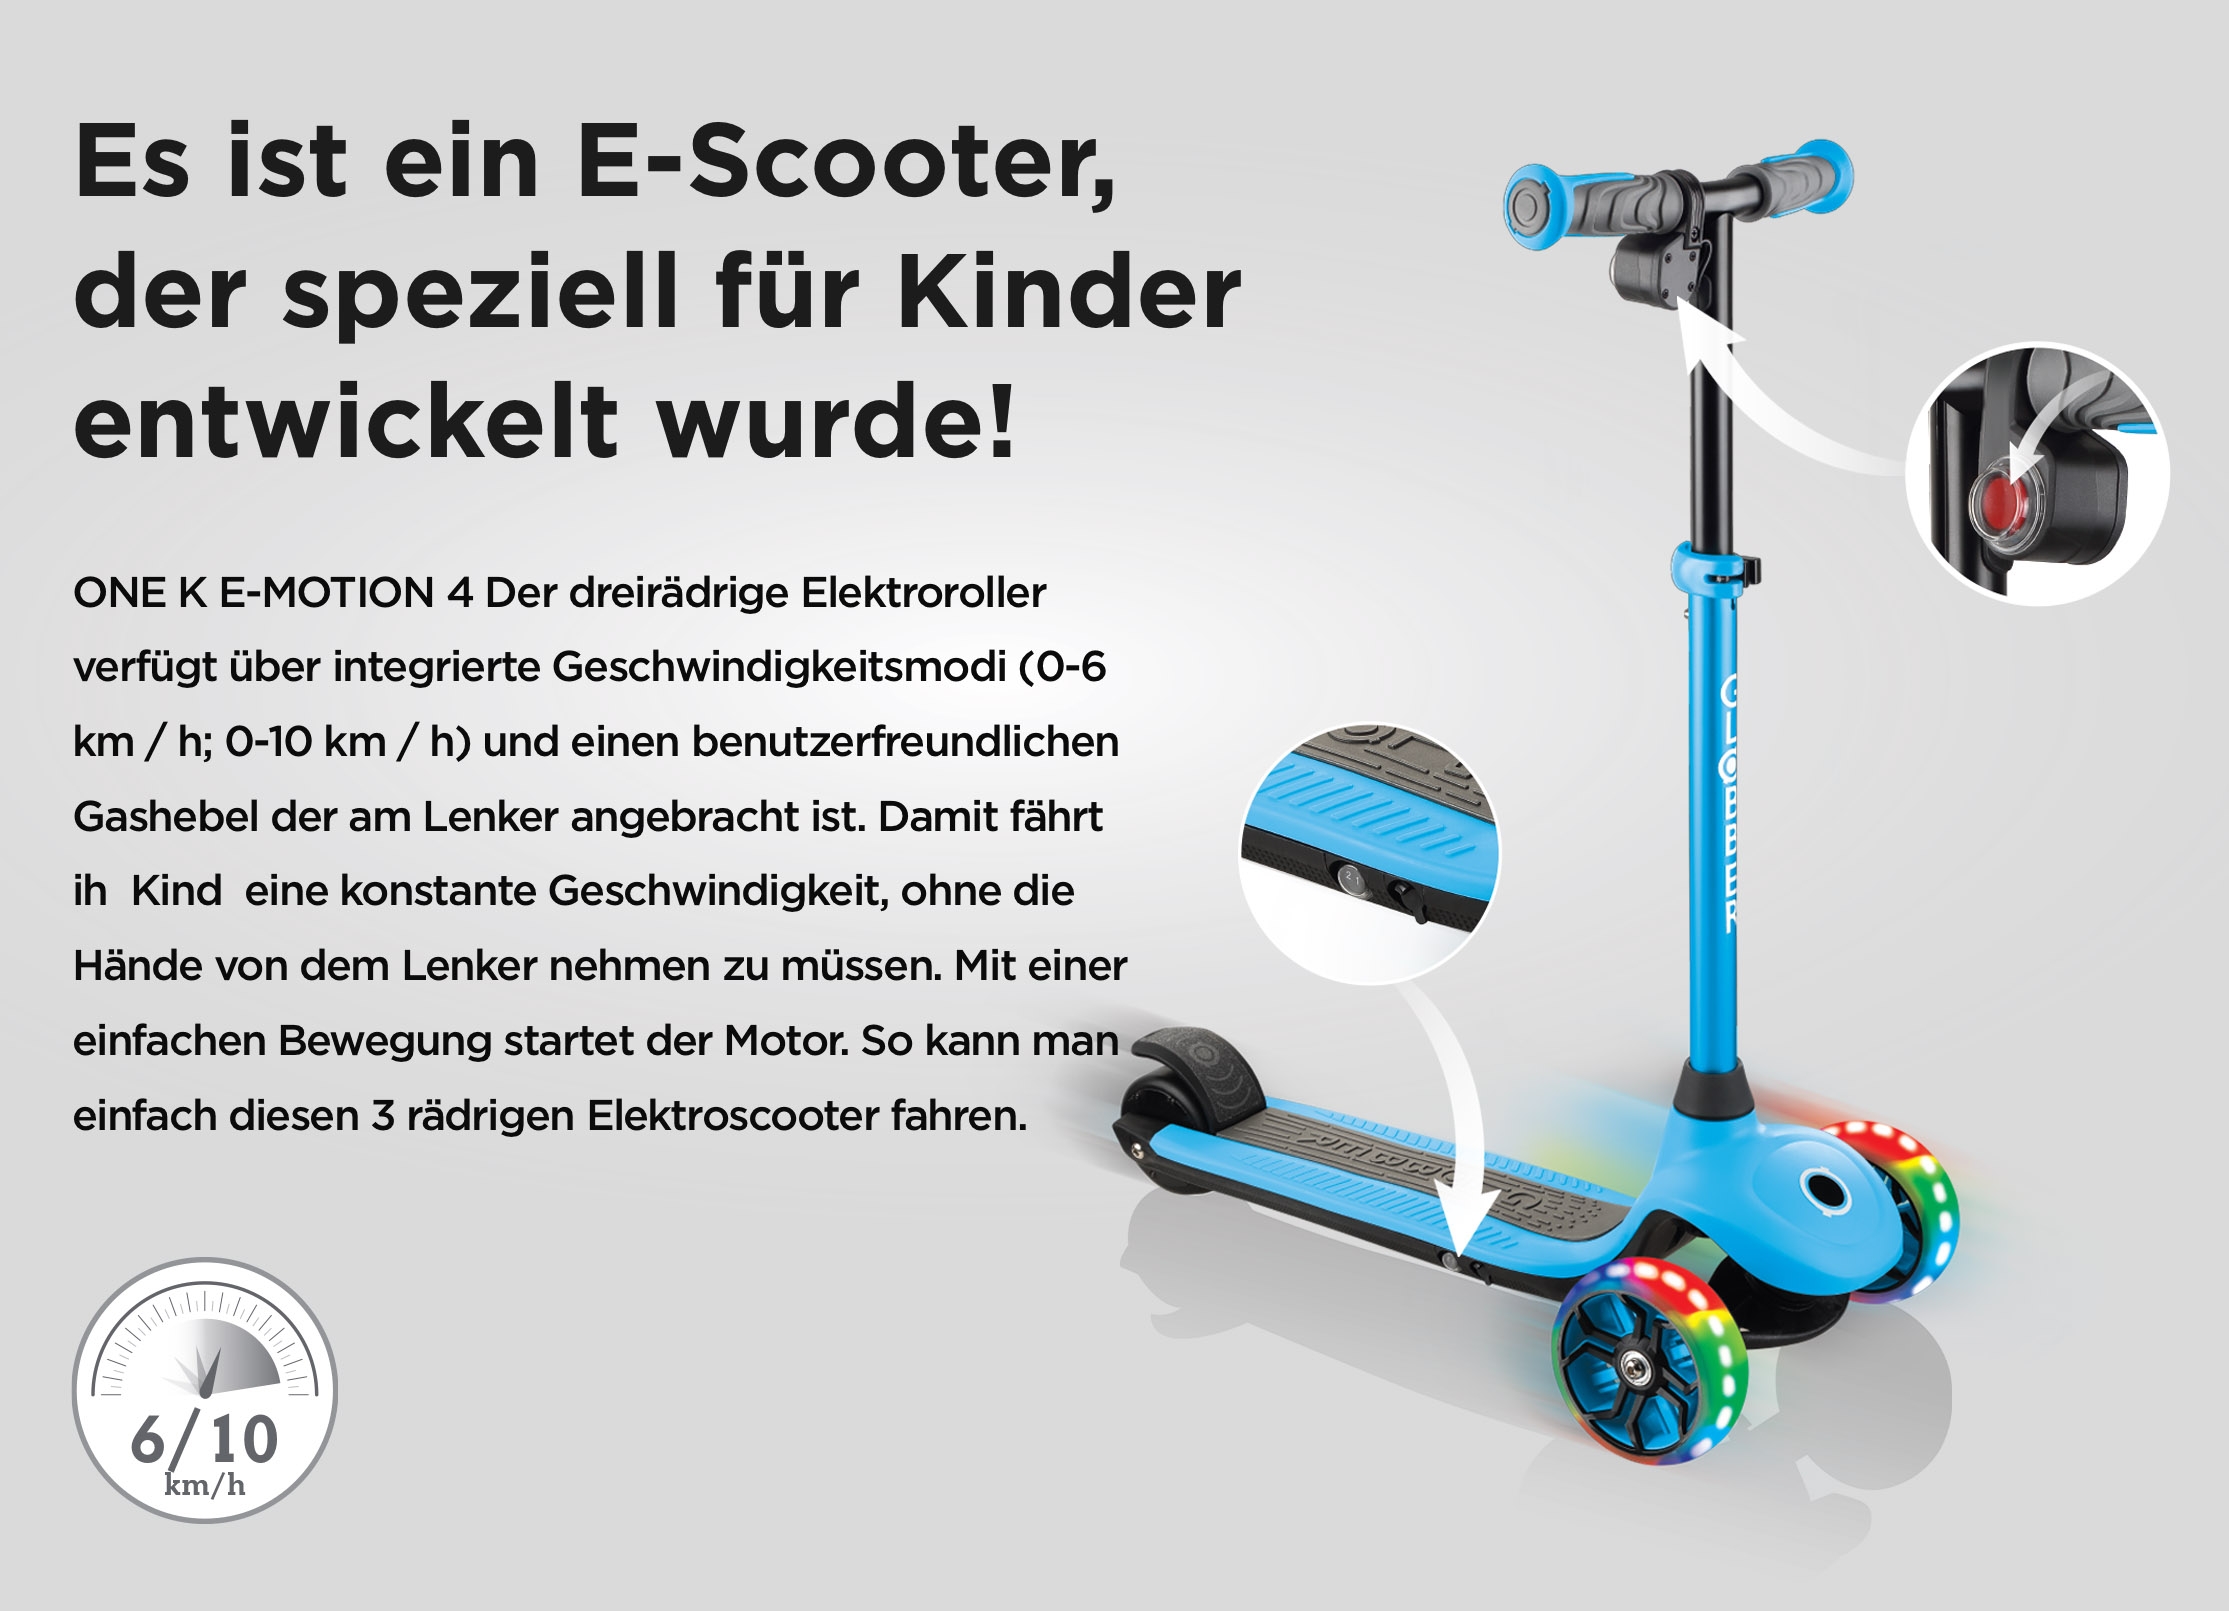 Es ist ein E-Scooter, der speziell für Kinder entwickelt wurde! ONE K E-MOTION 4 Der dreirädrige Elektroroller verfügt über integrierte Geschwindigkeitsmodi (0-6 km / h; 0-10 km / h) und einen benutzerfreundlichen Gashebel der am Lenker angebracht ist. Damit fährt ih  Kind  eine konstante Geschwindigkeit, ohne die Hände von dem Lenker nehmen zu müssen. Mit einer einfachen Bewegung startet der Motor. So kann man einfach diesen 3 rädrigen Elektroscooter fahren.